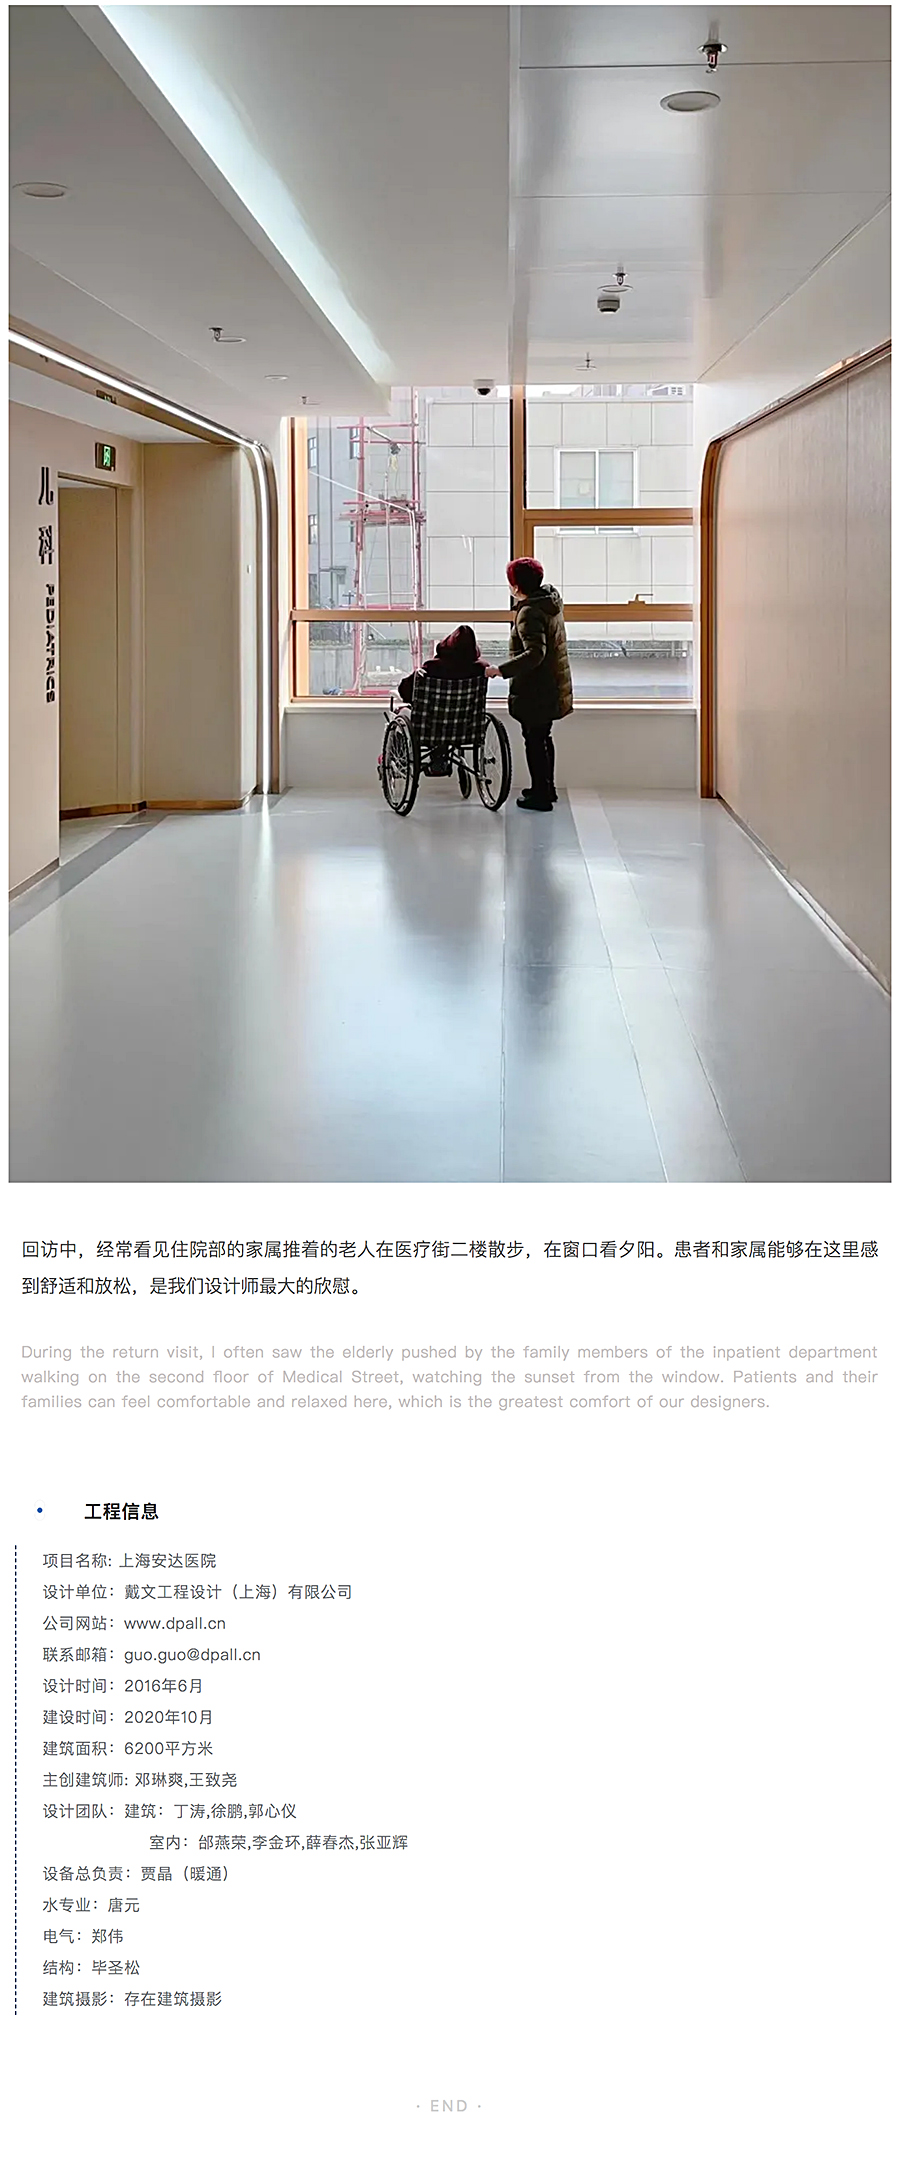 ⽆微不⾄，精益化思维下的上海安达医院⻔急诊改造_0017_图层-18.jpg